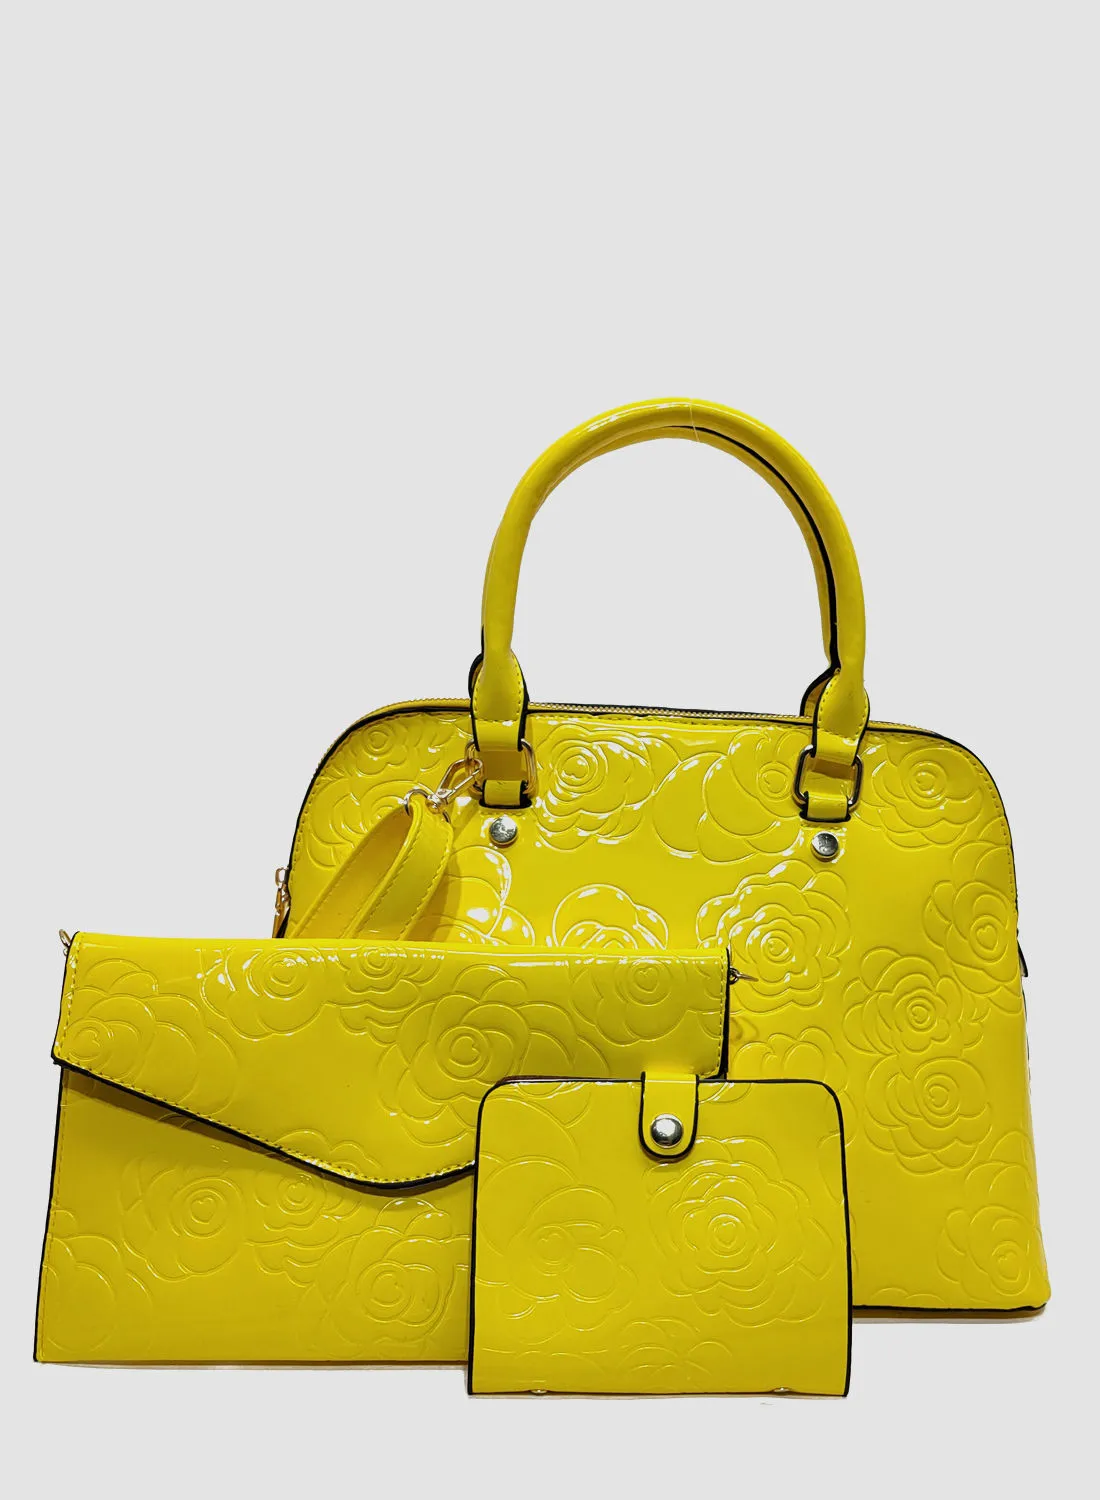 مجموعة حقيبة يد كاجوال من أيلا مكونة من 3 قطع أصفر